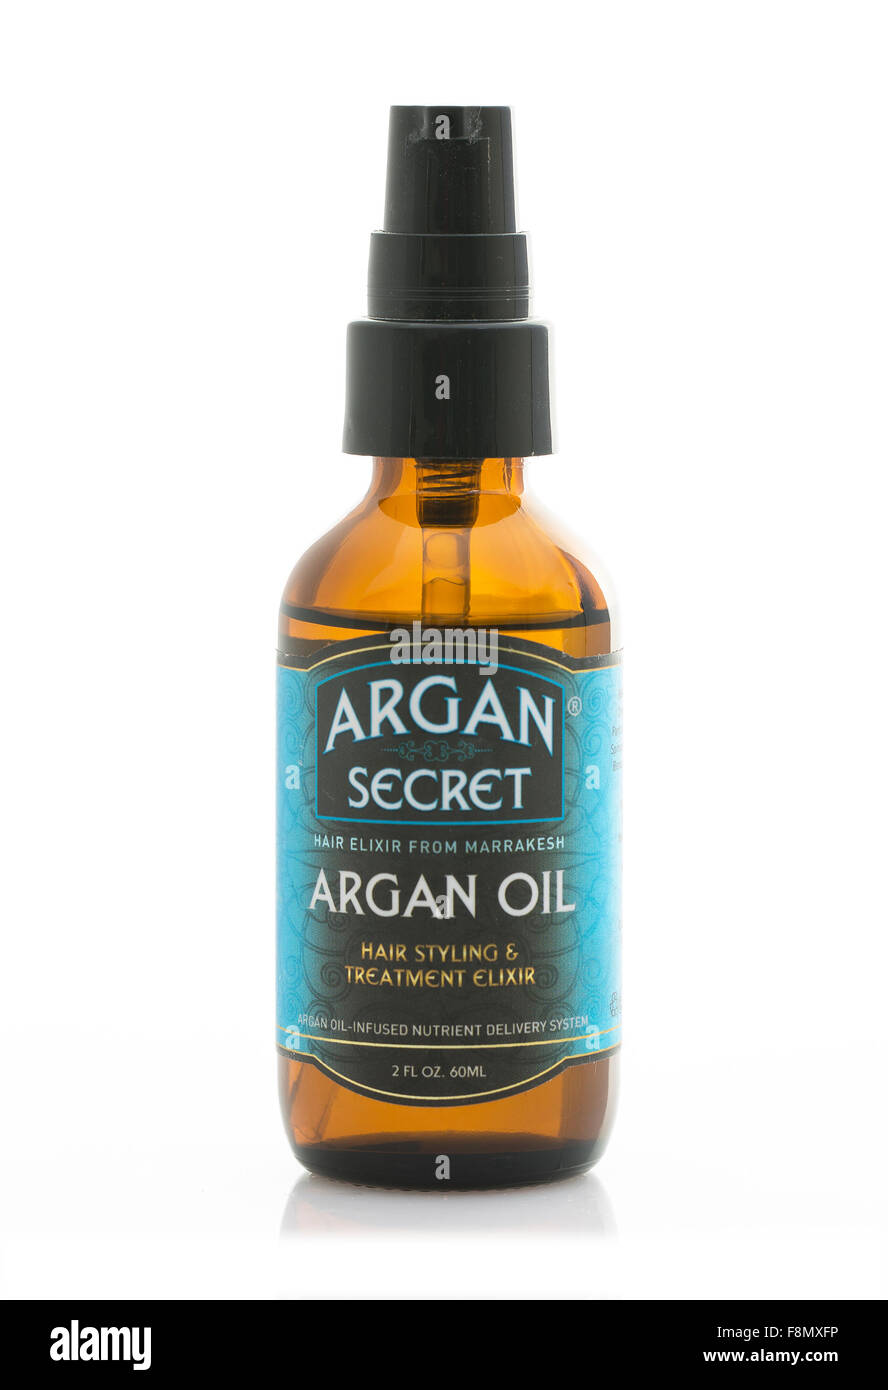 Secret d'Argan cheveux styling traitement Elixir d'huile sur un fond blanc. Banque D'Images